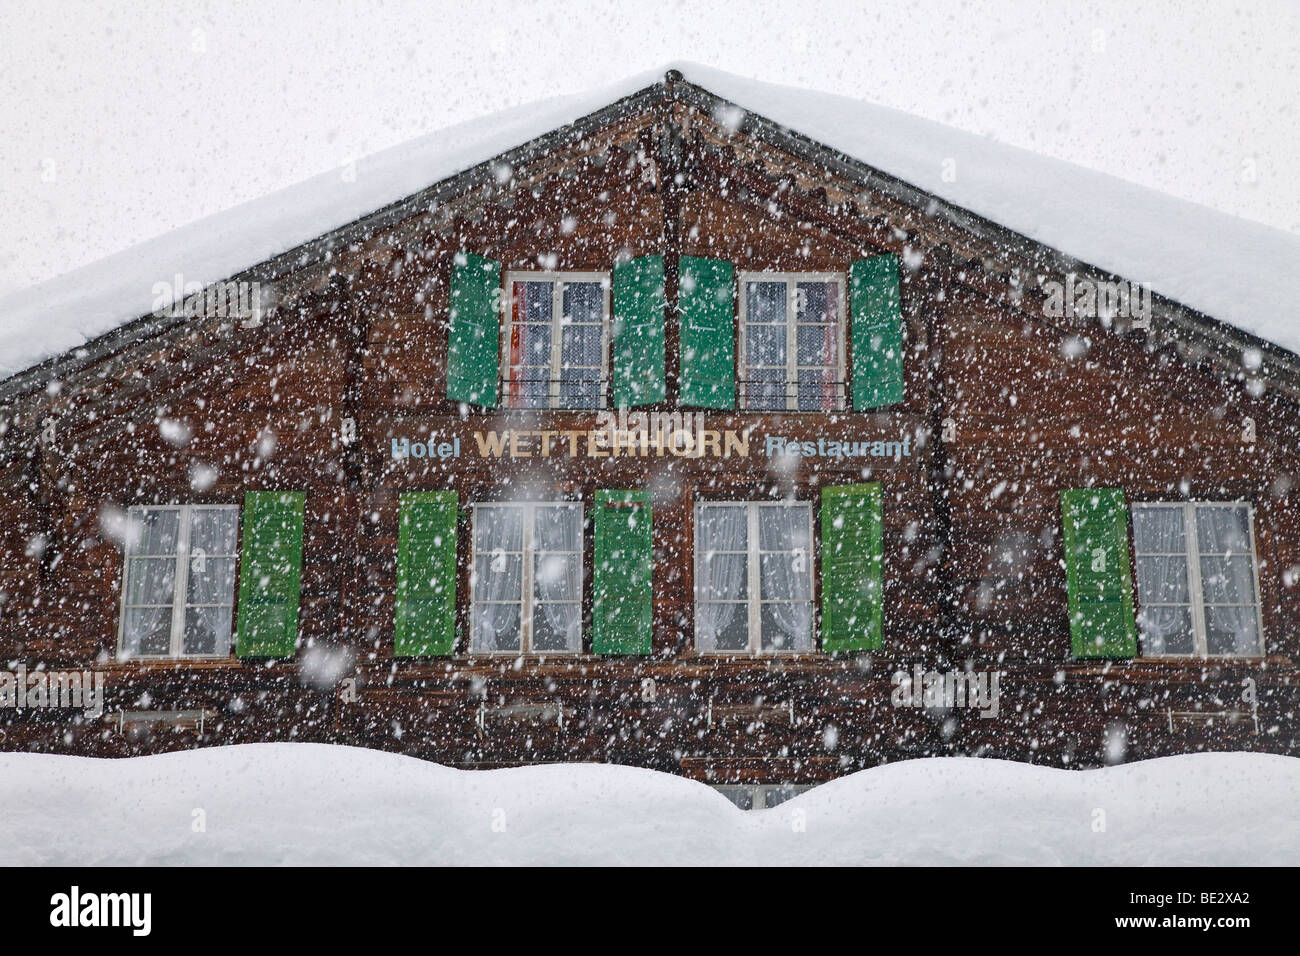 Bergrestaurant in den Schnee, Grindelwald, Jungfrau Region, Berner Oberland, Schweizer Alpen, Schweiz Stockfoto